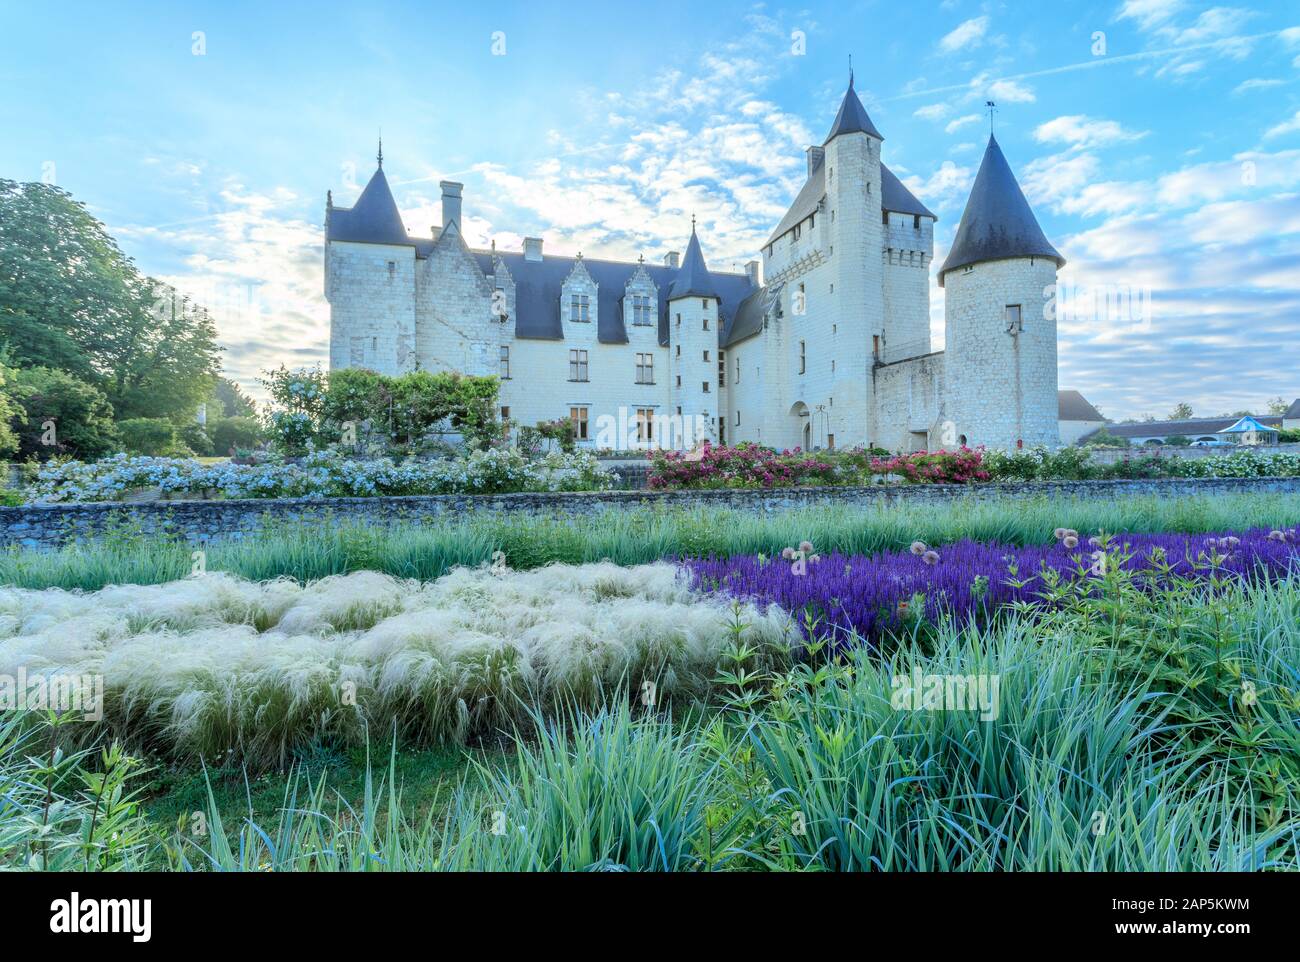 France, Indre et Loire, Loire Anjou Touraine Regional Natural Park, Lemere, Chateau du Rivau gardens, castle and Jardin de la princesse Raiponce with Stock Photo